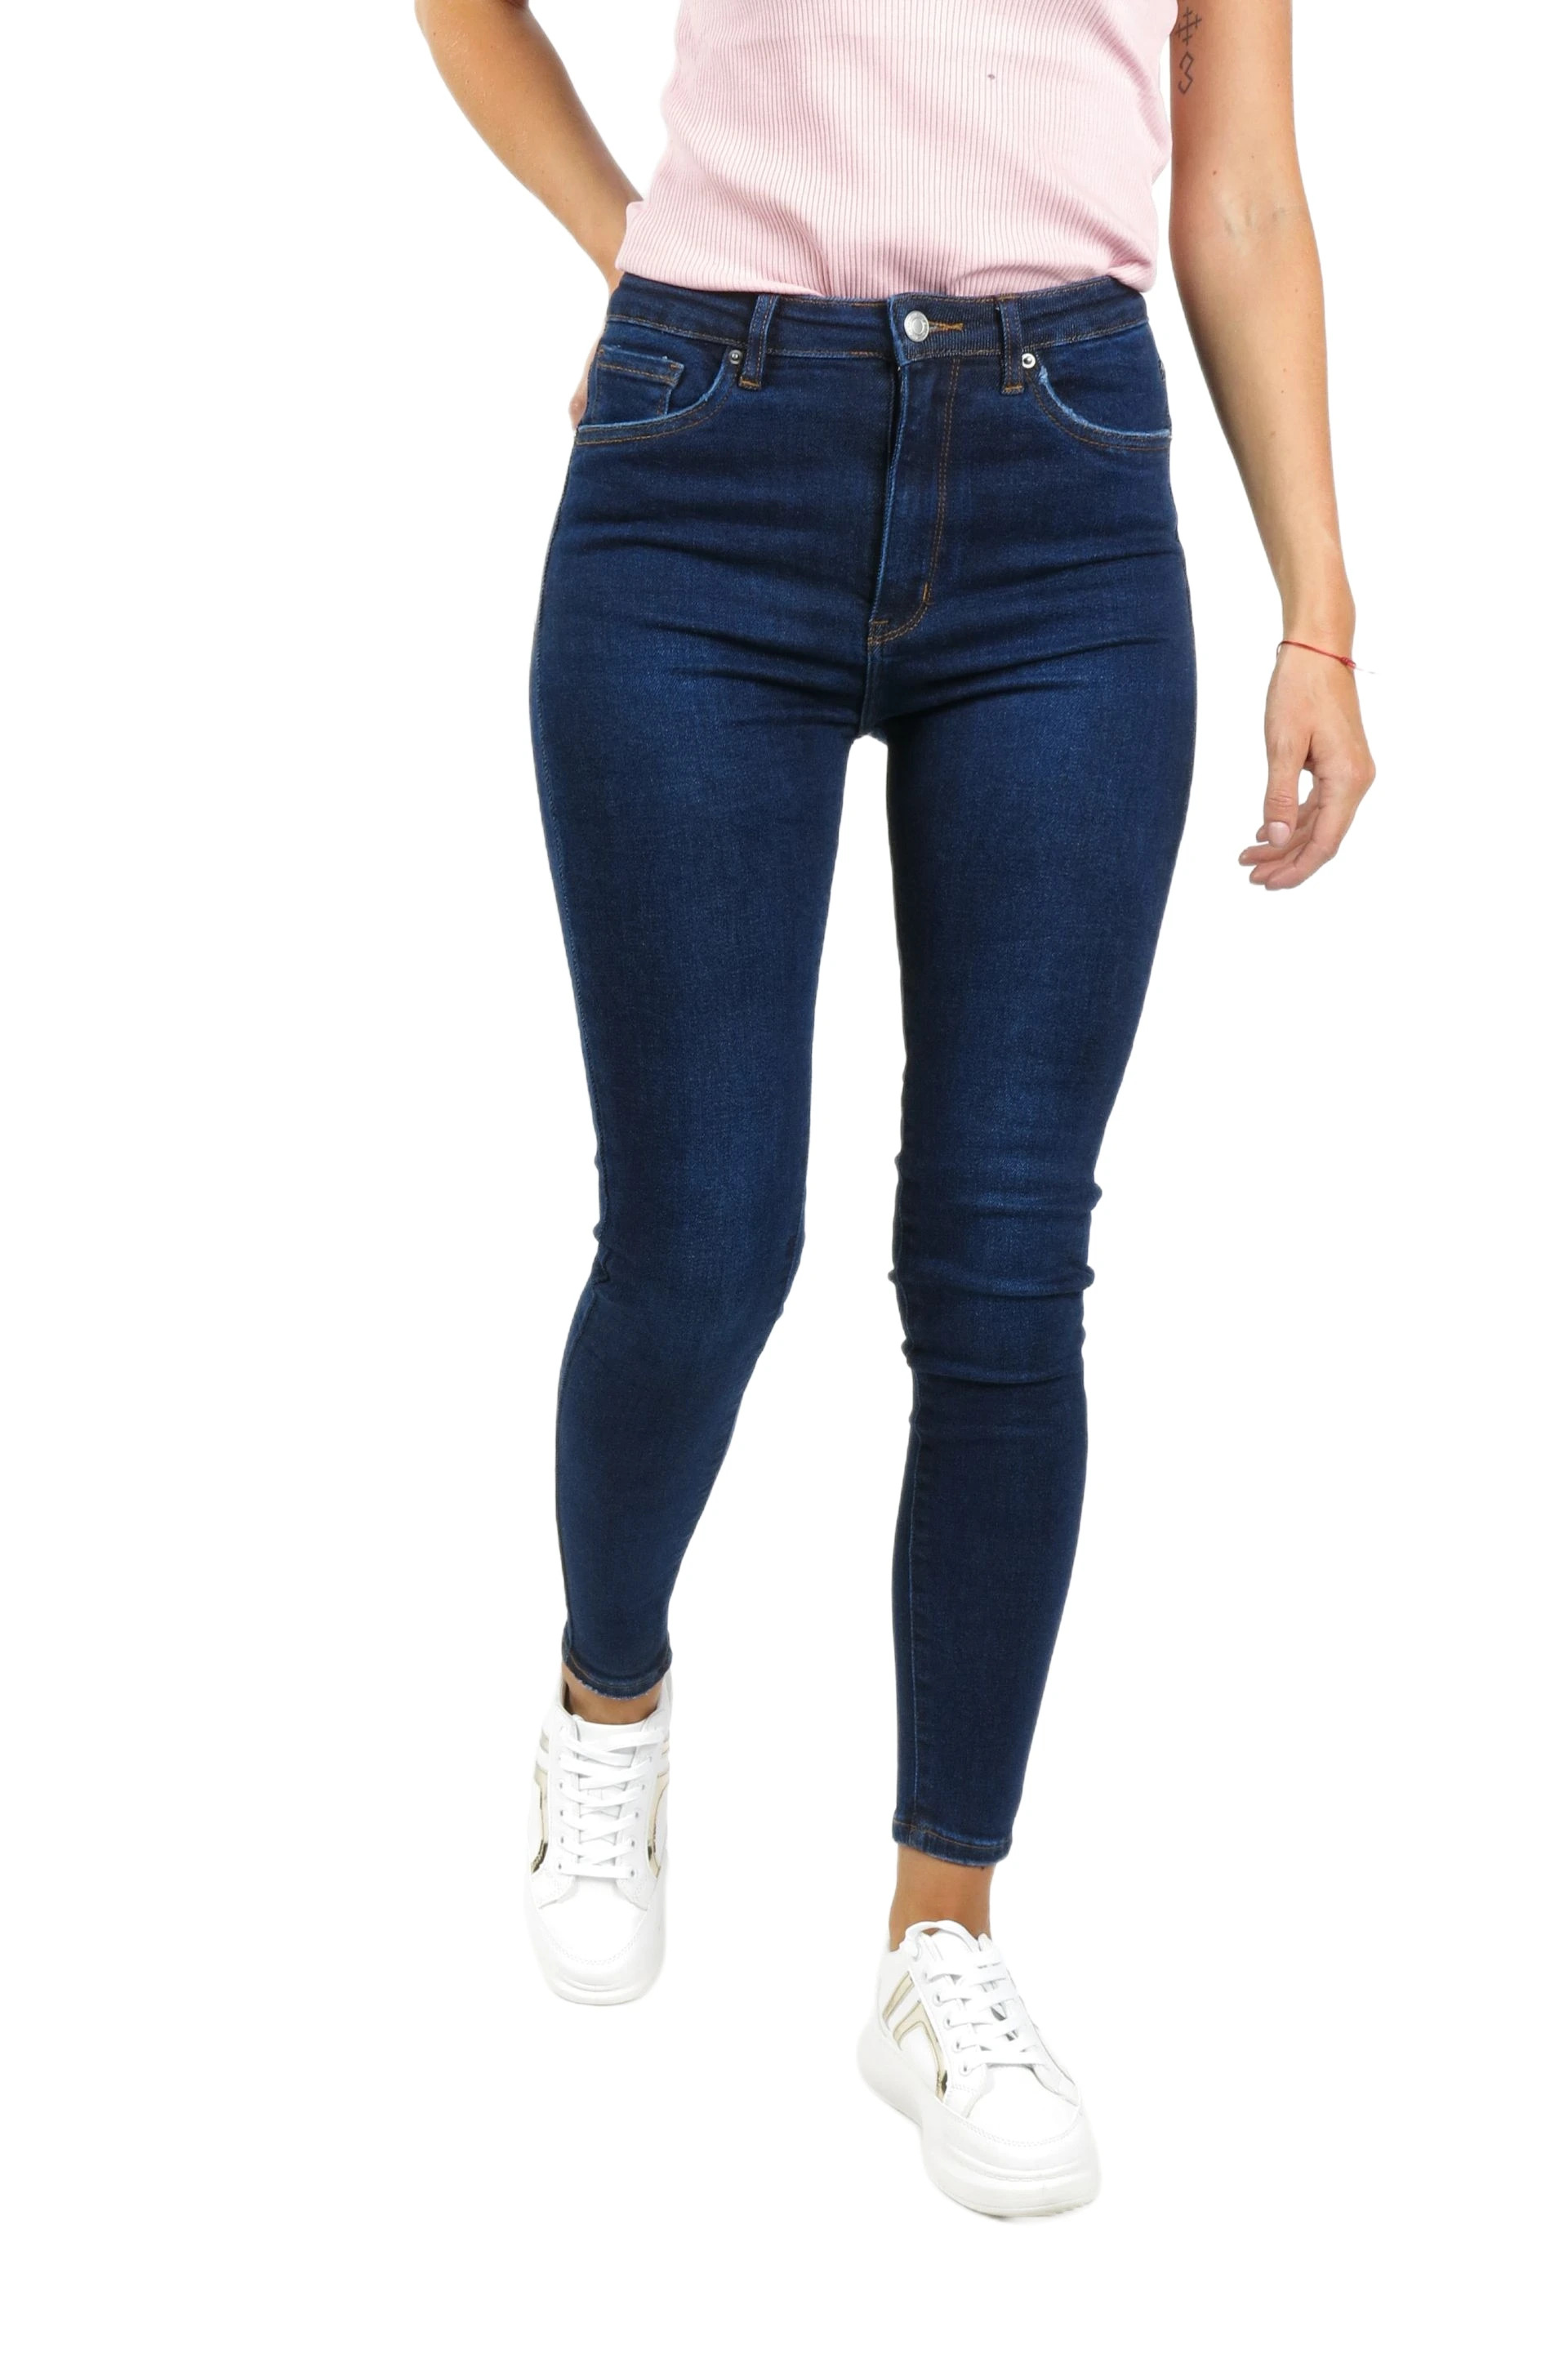 Jeans VS MISS SHW7283